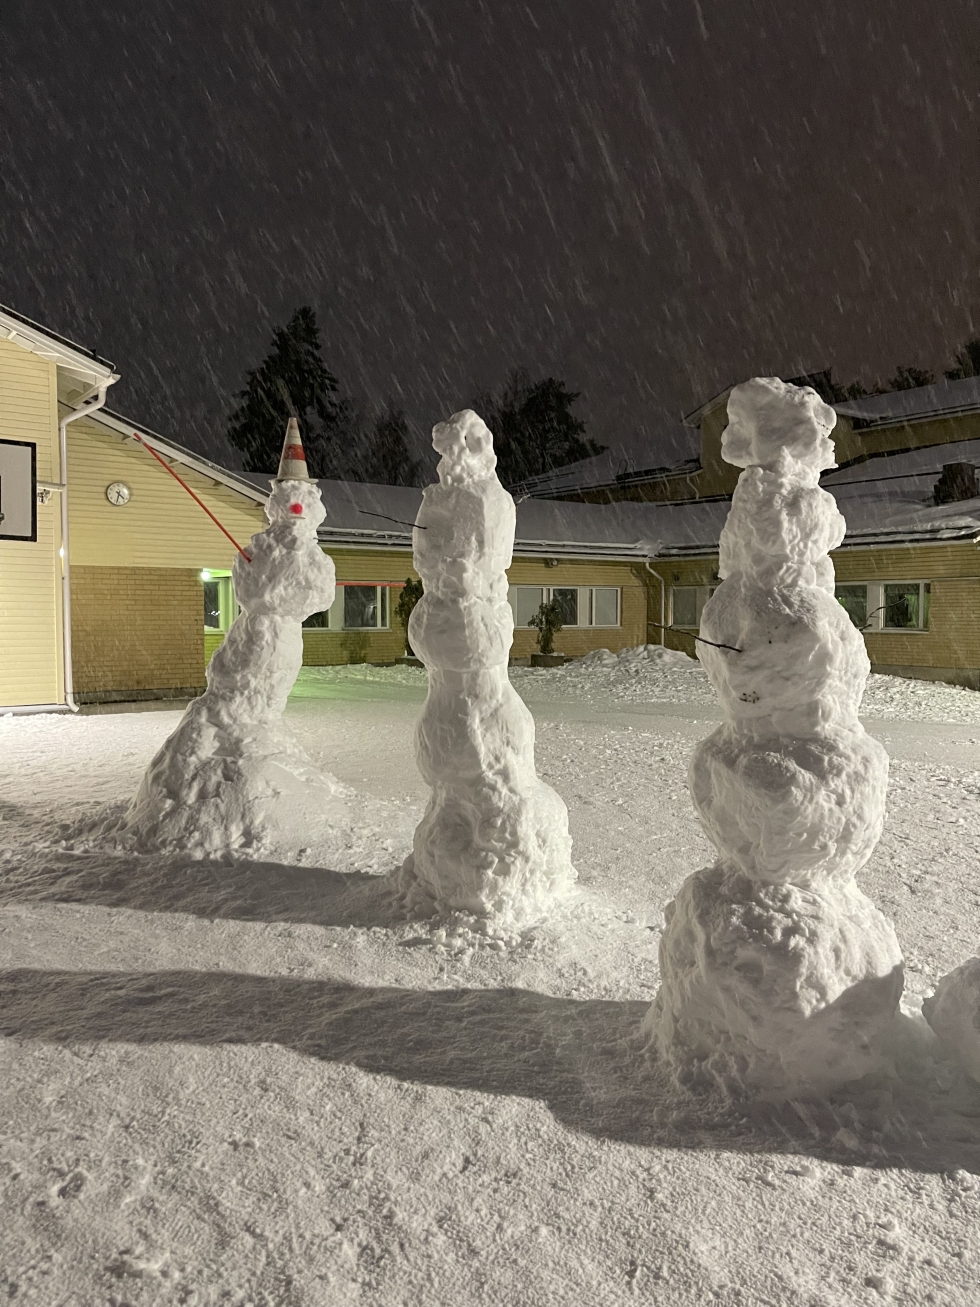 Lumiveistosten teko oli onnistunut Reijolan koululla lauhana päivänä 19. tammikuuta.